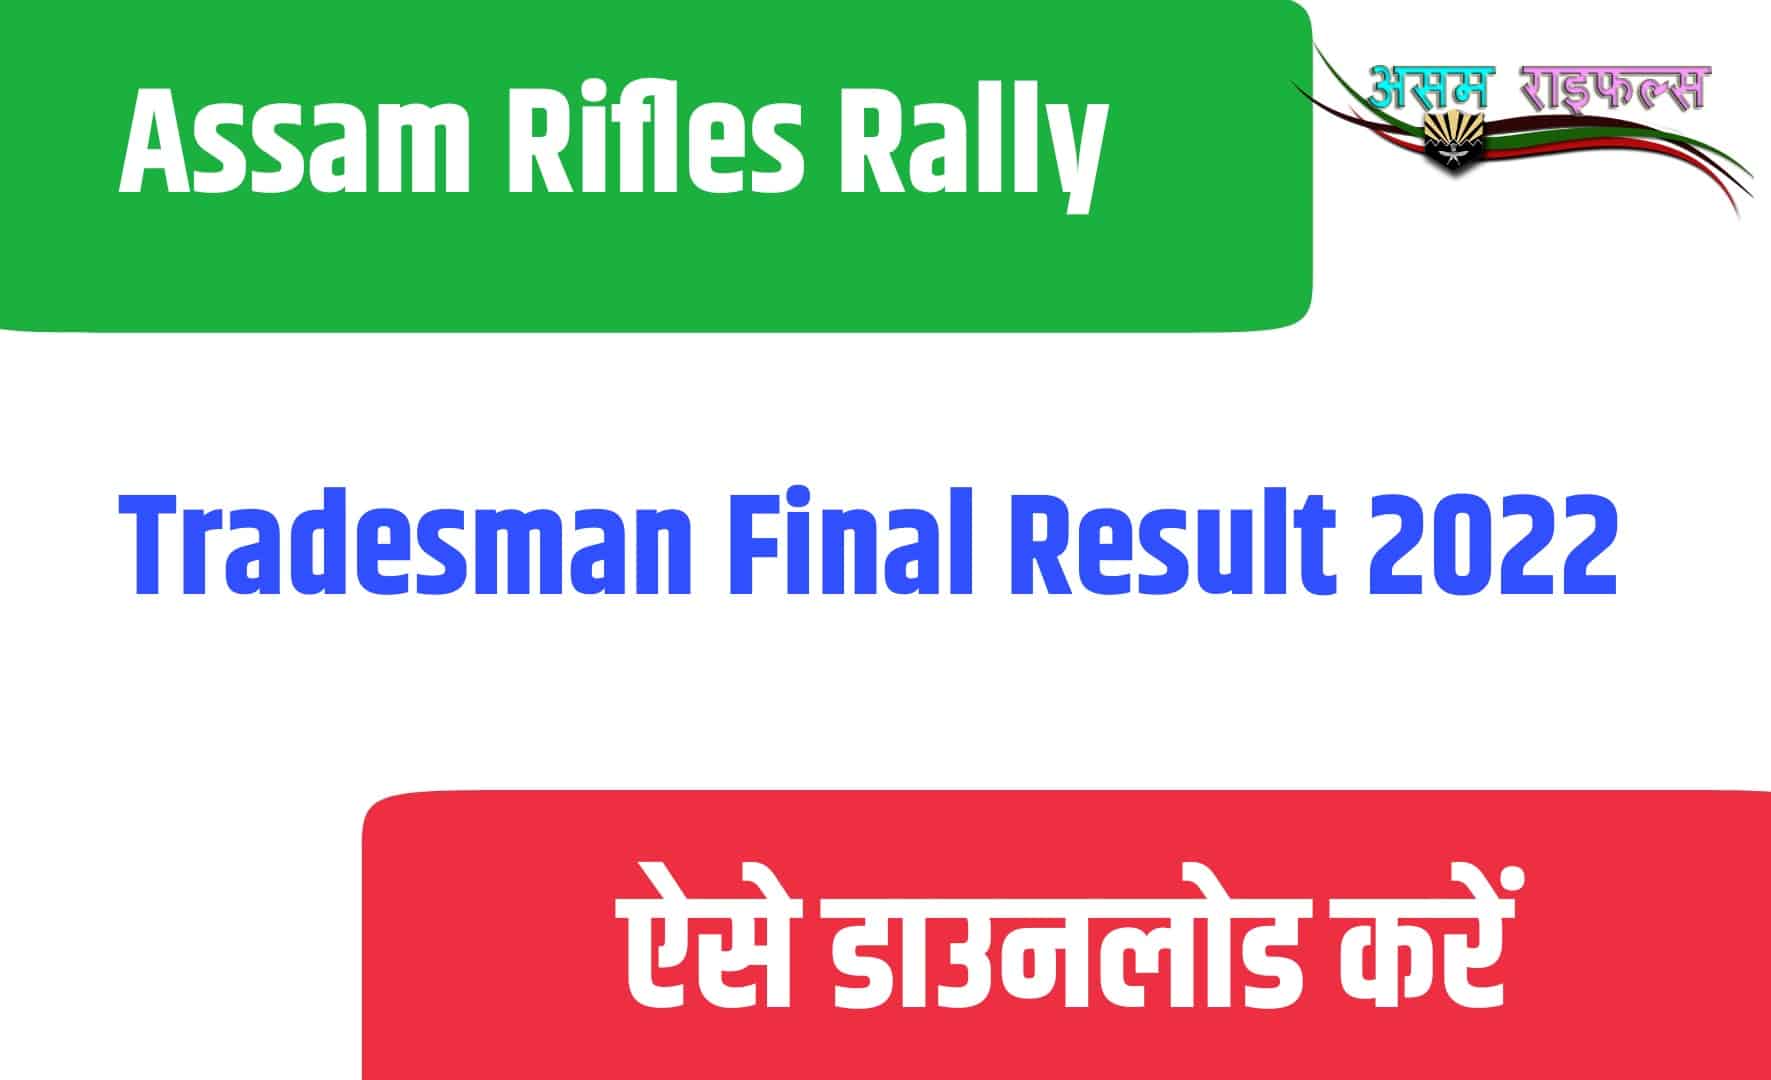 Assam Rifles Rally Tradesman Final Result 2022